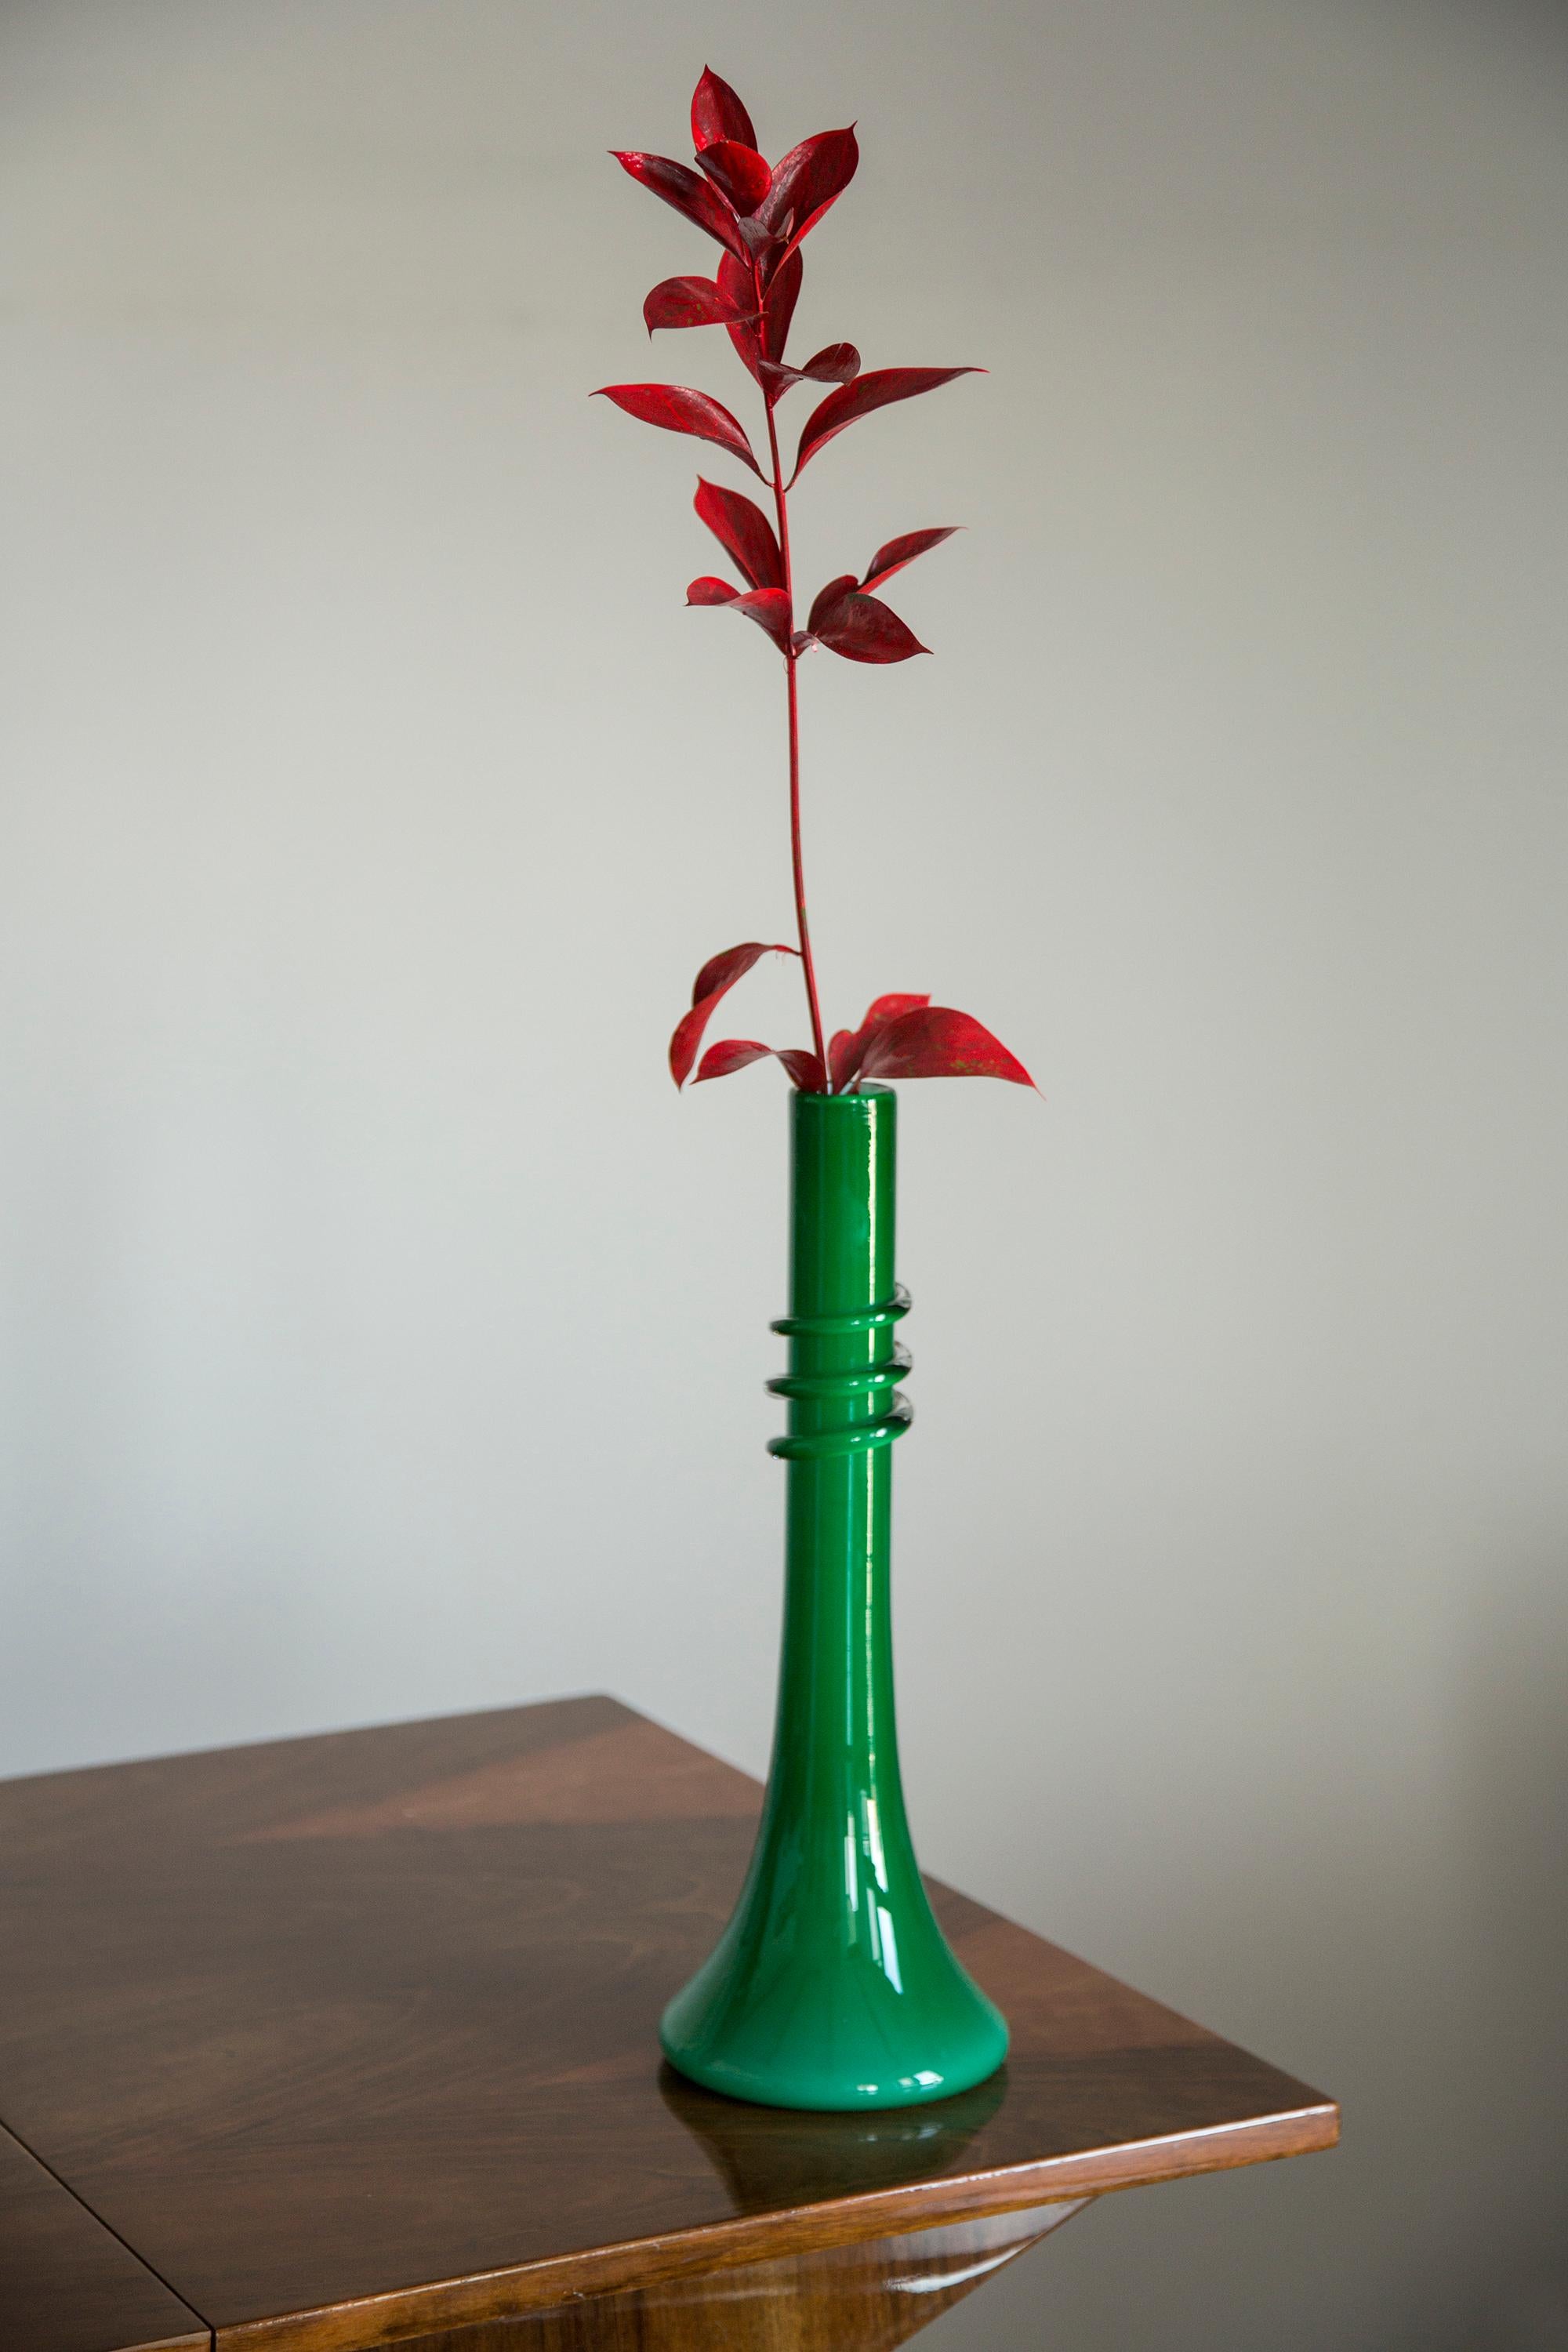 Vase, die nach traditioneller metallurgischer Technik von Hand geformt wurde. Es war aus farbigem Glas in einem Grünton gefertigt. Die Oberfläche des Objekts mit vertikalen Rillen, die im mittleren Teil die Richtung ändern, ineinander übergehen und